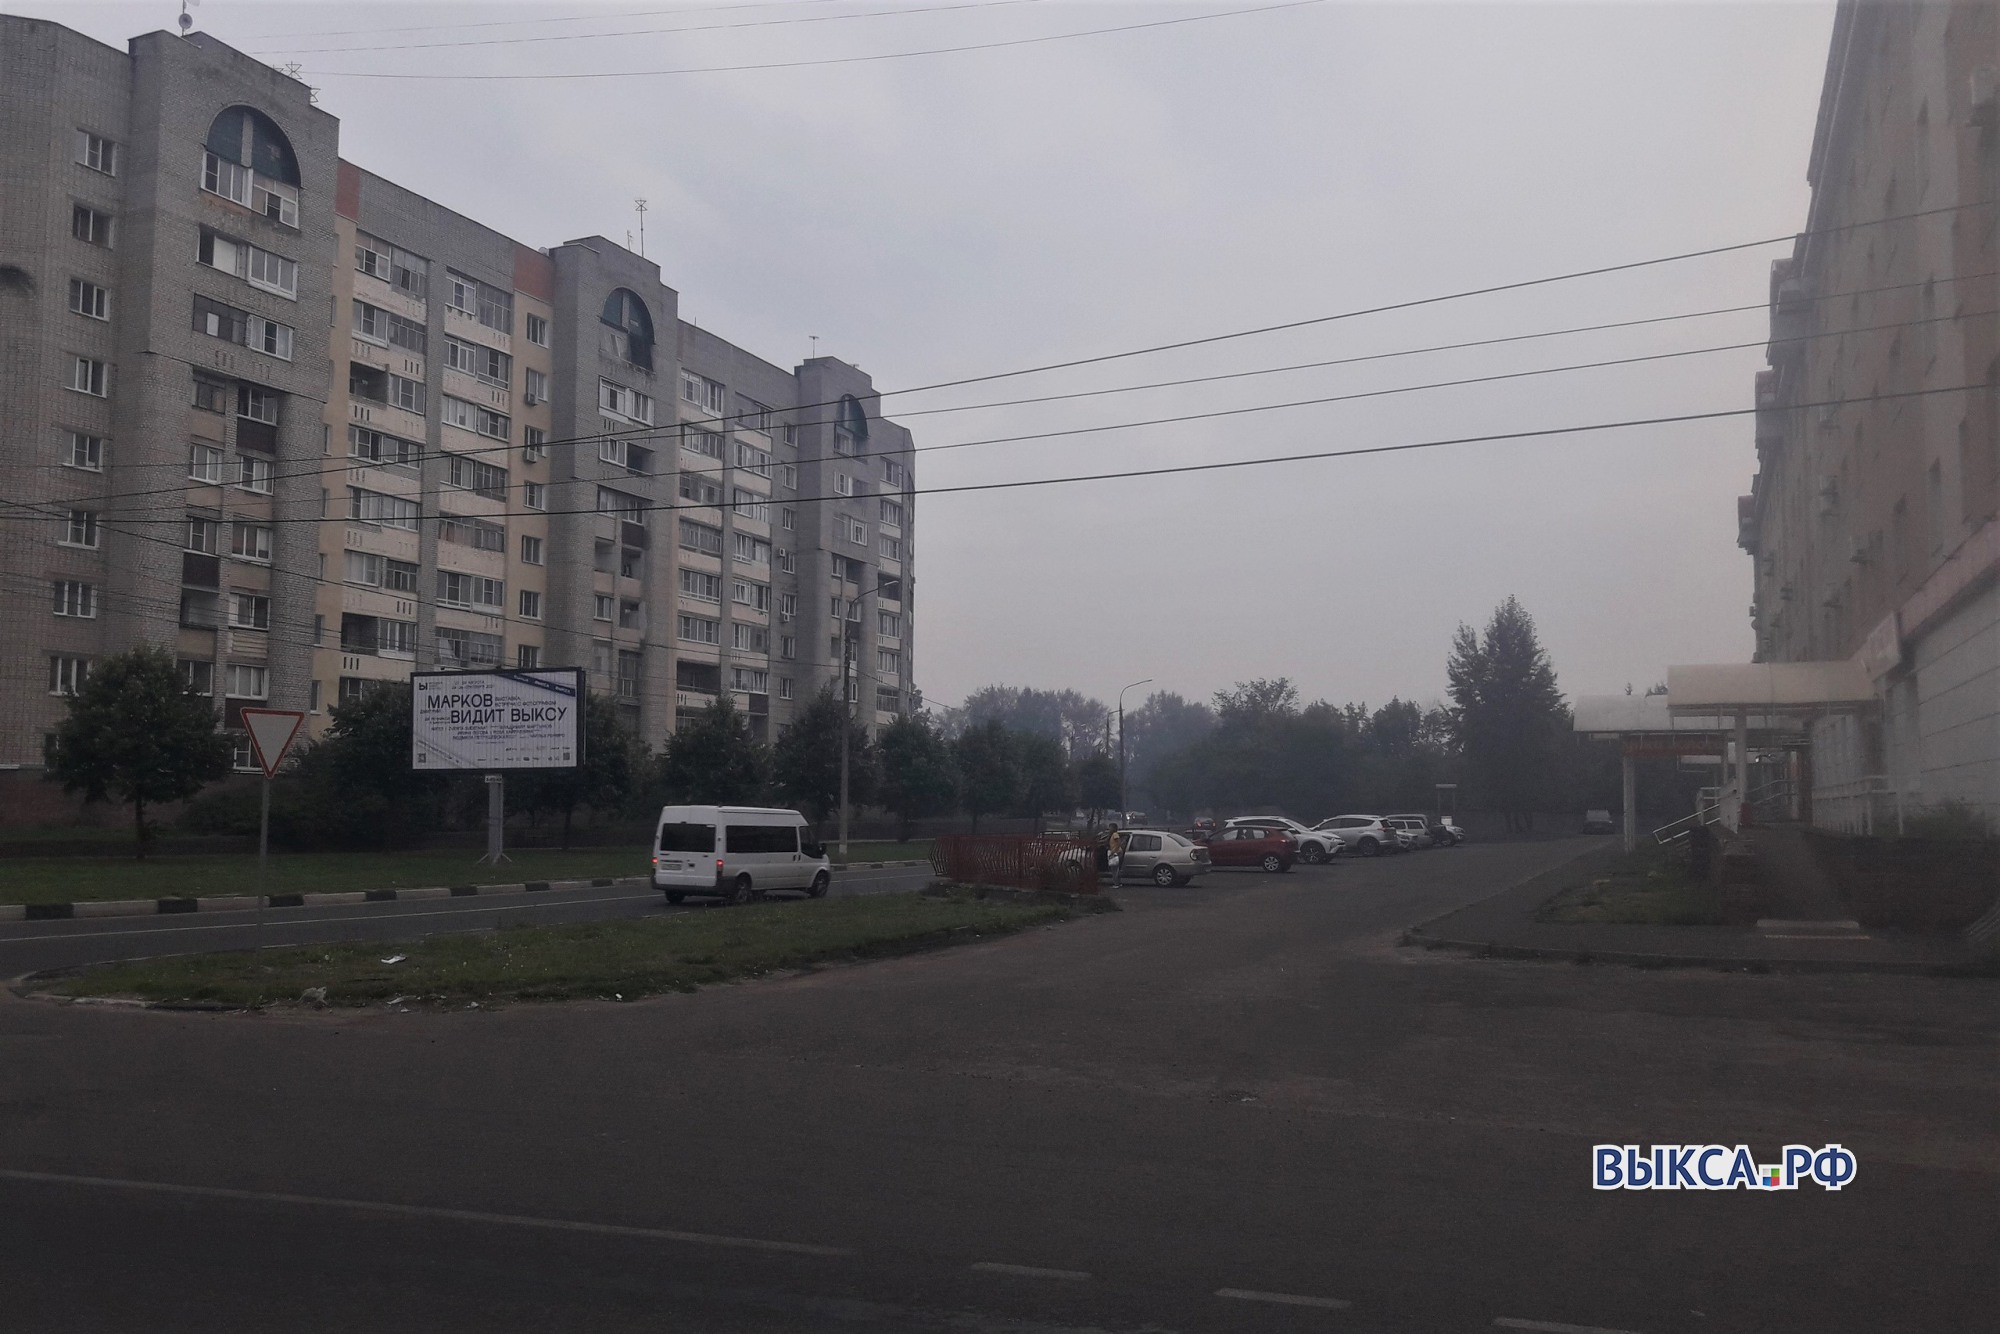 Выксу накрыл дым от лесных пожаров в Сарове и Первомайске